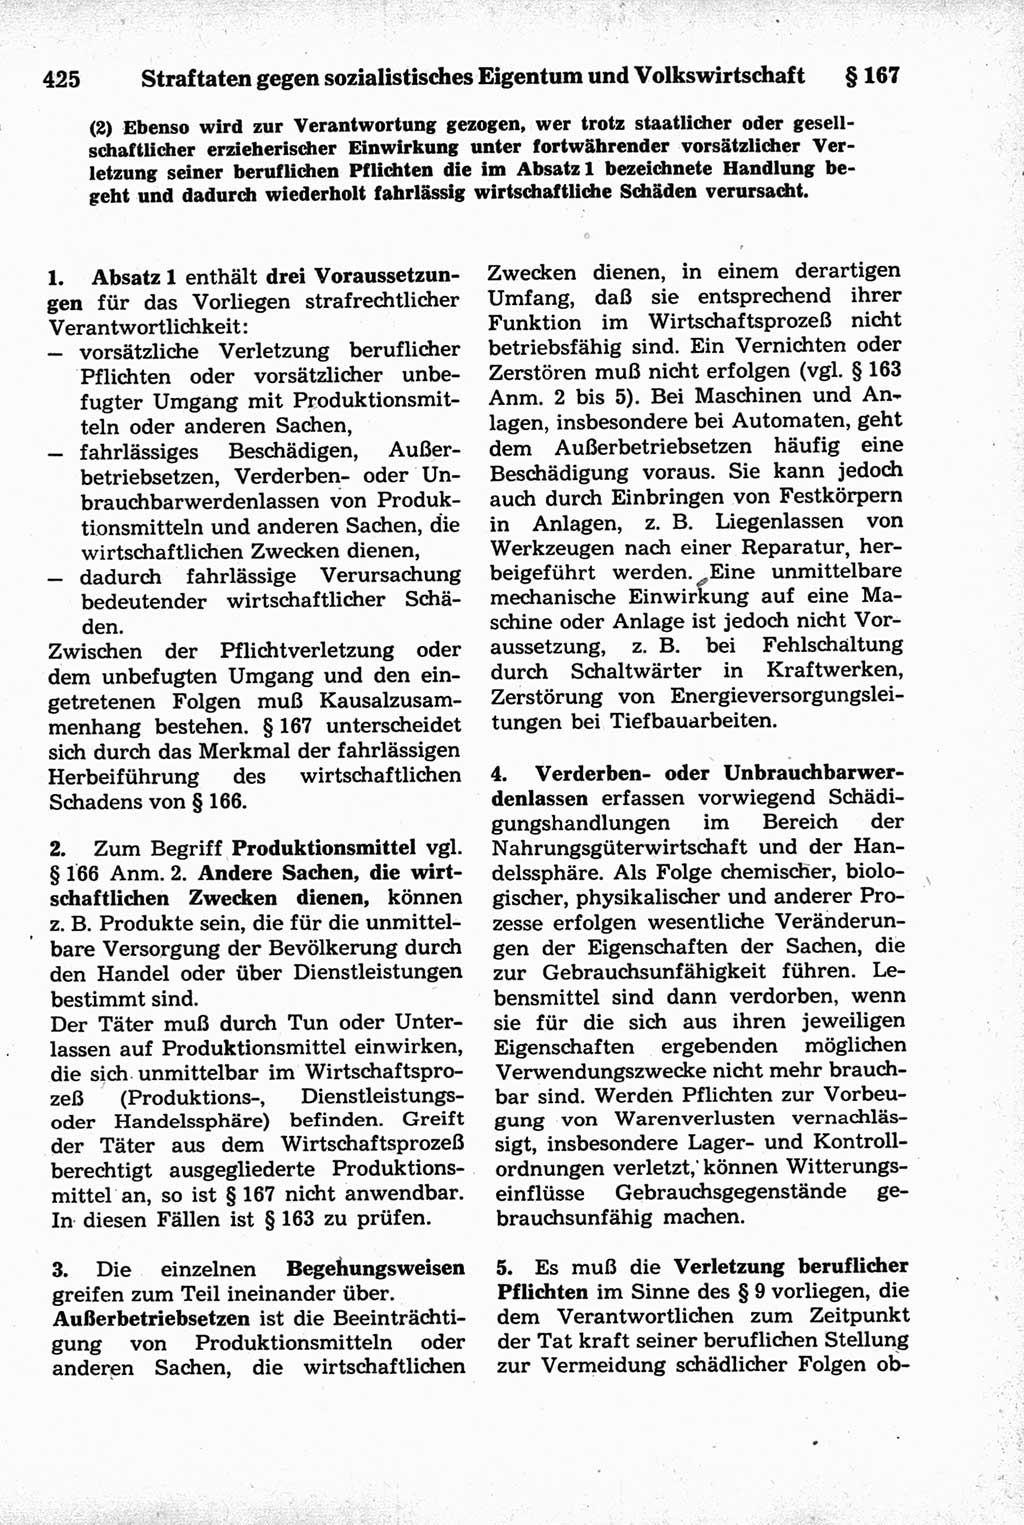 Strafrecht der Deutschen Demokratischen Republik (DDR), Kommentar zum Strafgesetzbuch (StGB) 1981, Seite 425 (Strafr. DDR Komm. StGB 1981, S. 425)